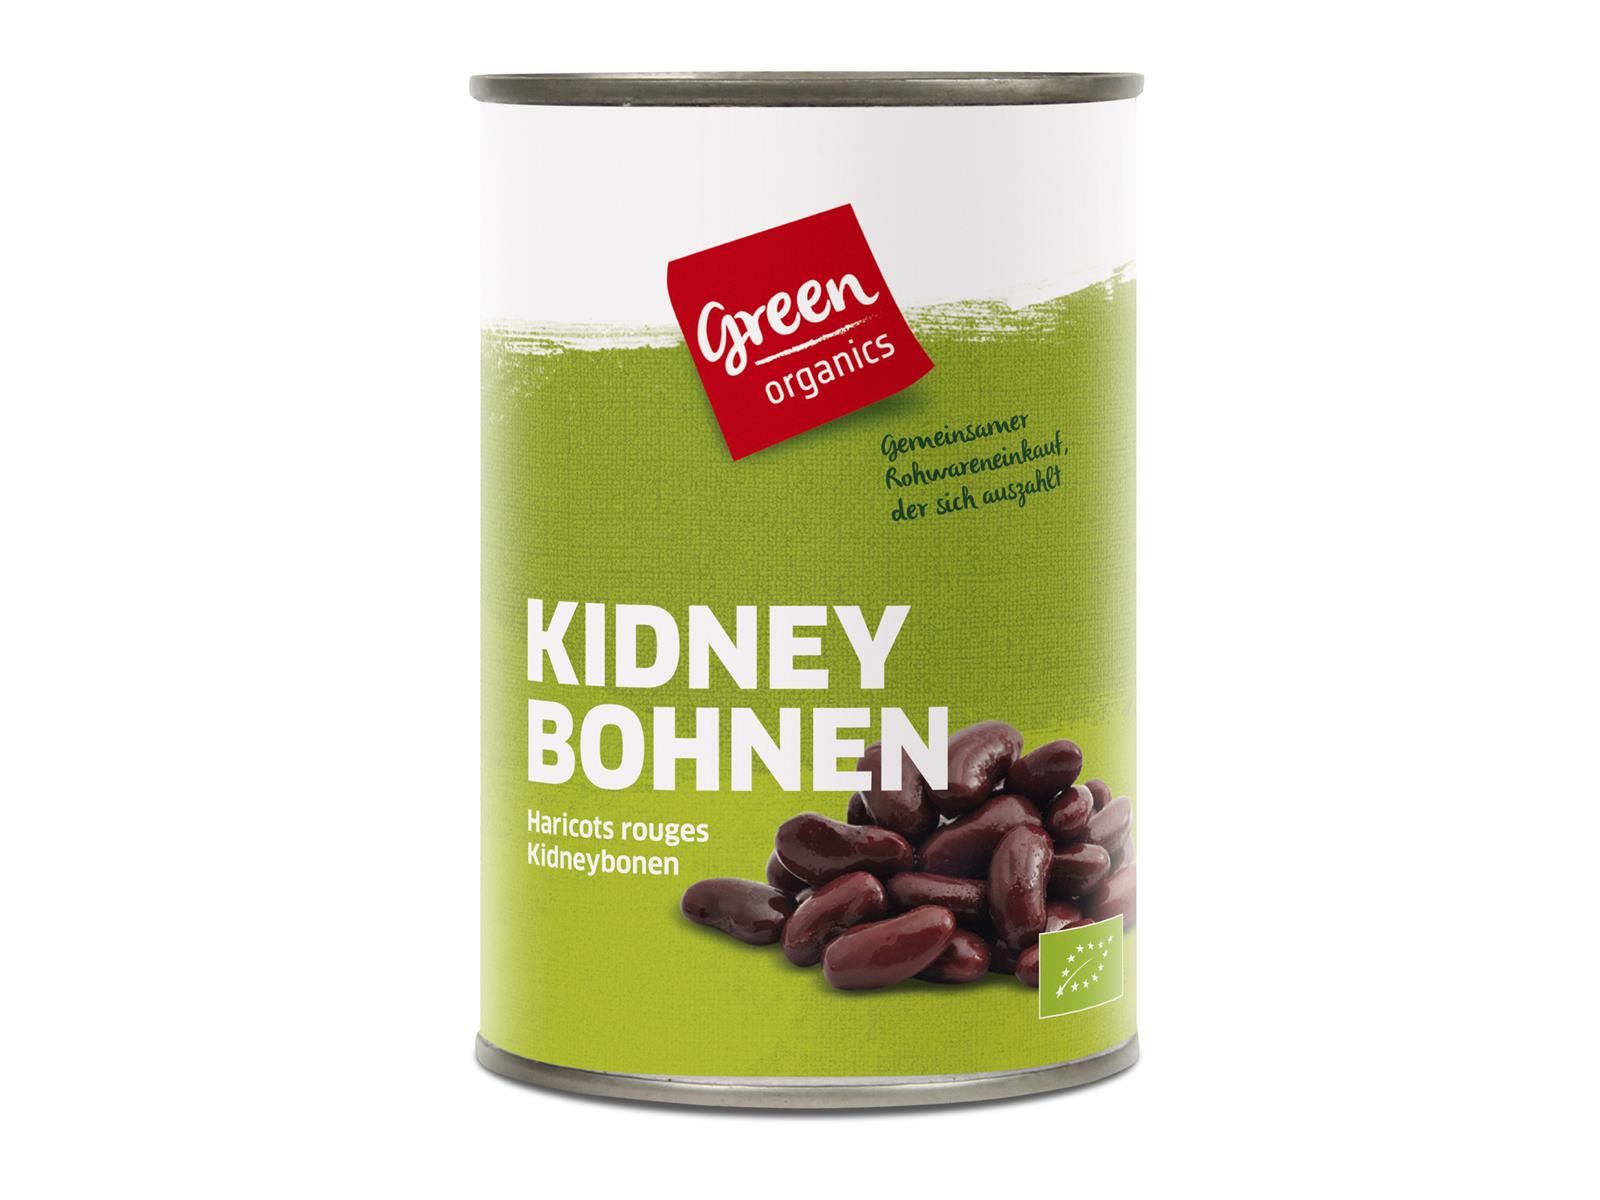 greenorganics Kidneybohnen in der Dose 400 g